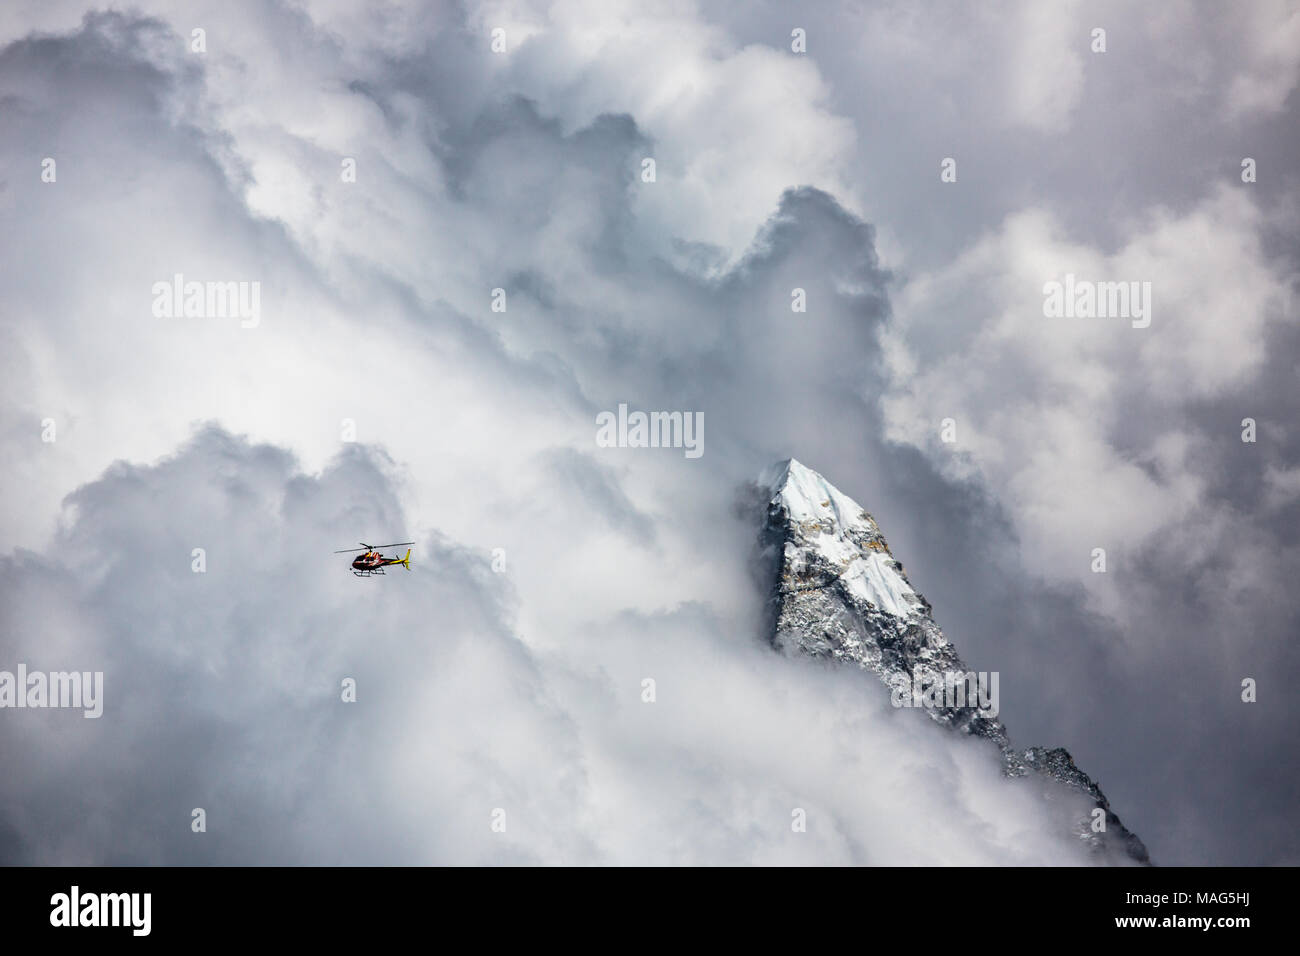 Un Eurocopter battenti in condizioni pericolose a 15.000 ft nelle nuvole ma ancora al di sotto dei picchi di montagna sul suo modo al campo base di Mt. Everest. Il Nepal Foto Stock